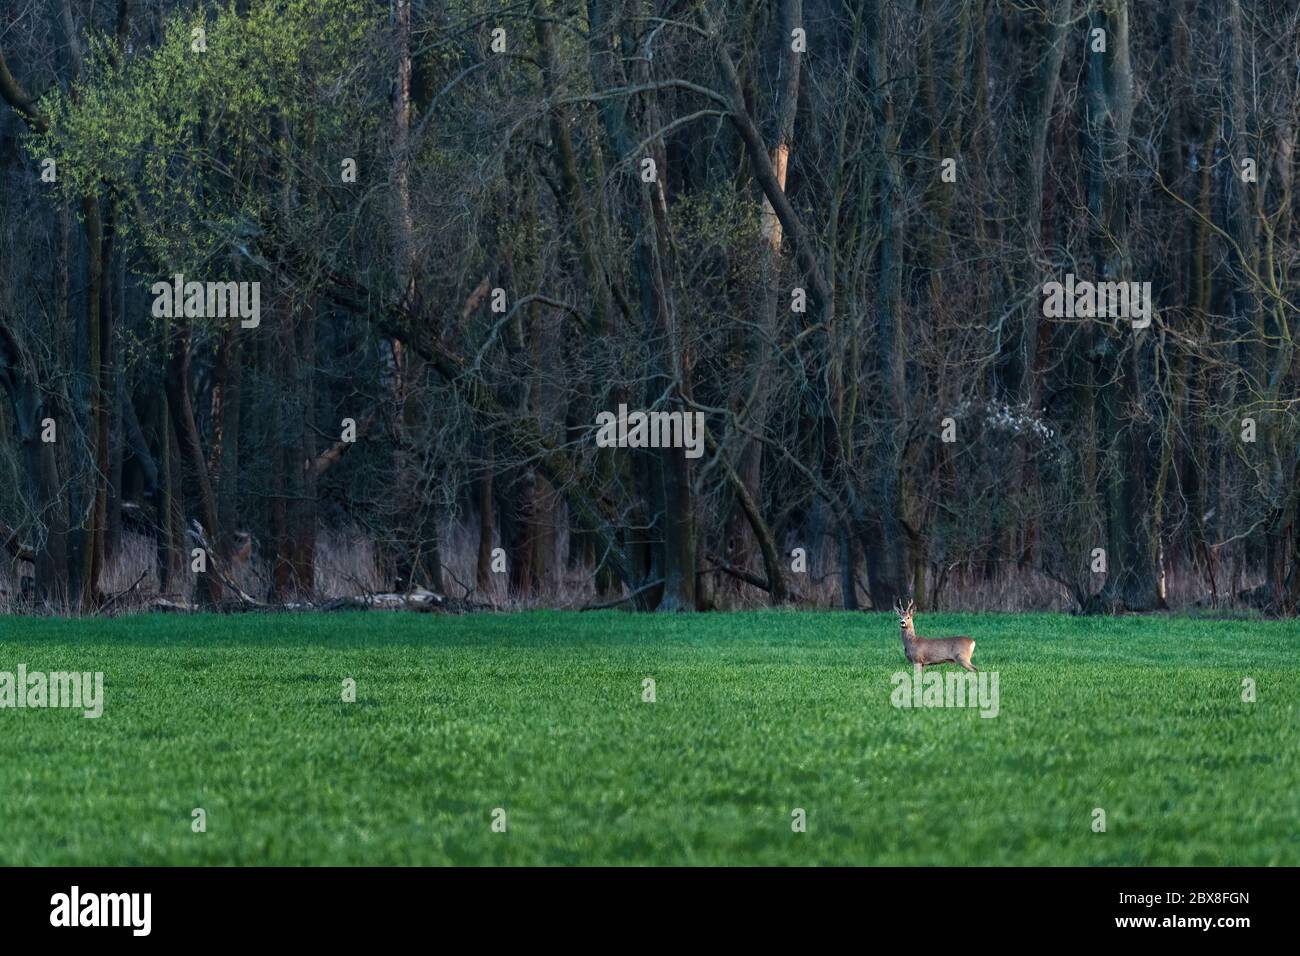 Ciervo roe europeo - Capreolus capreolus, ciervo común de los bosques europeos, bosques y prados, República Checa. Foto de stock